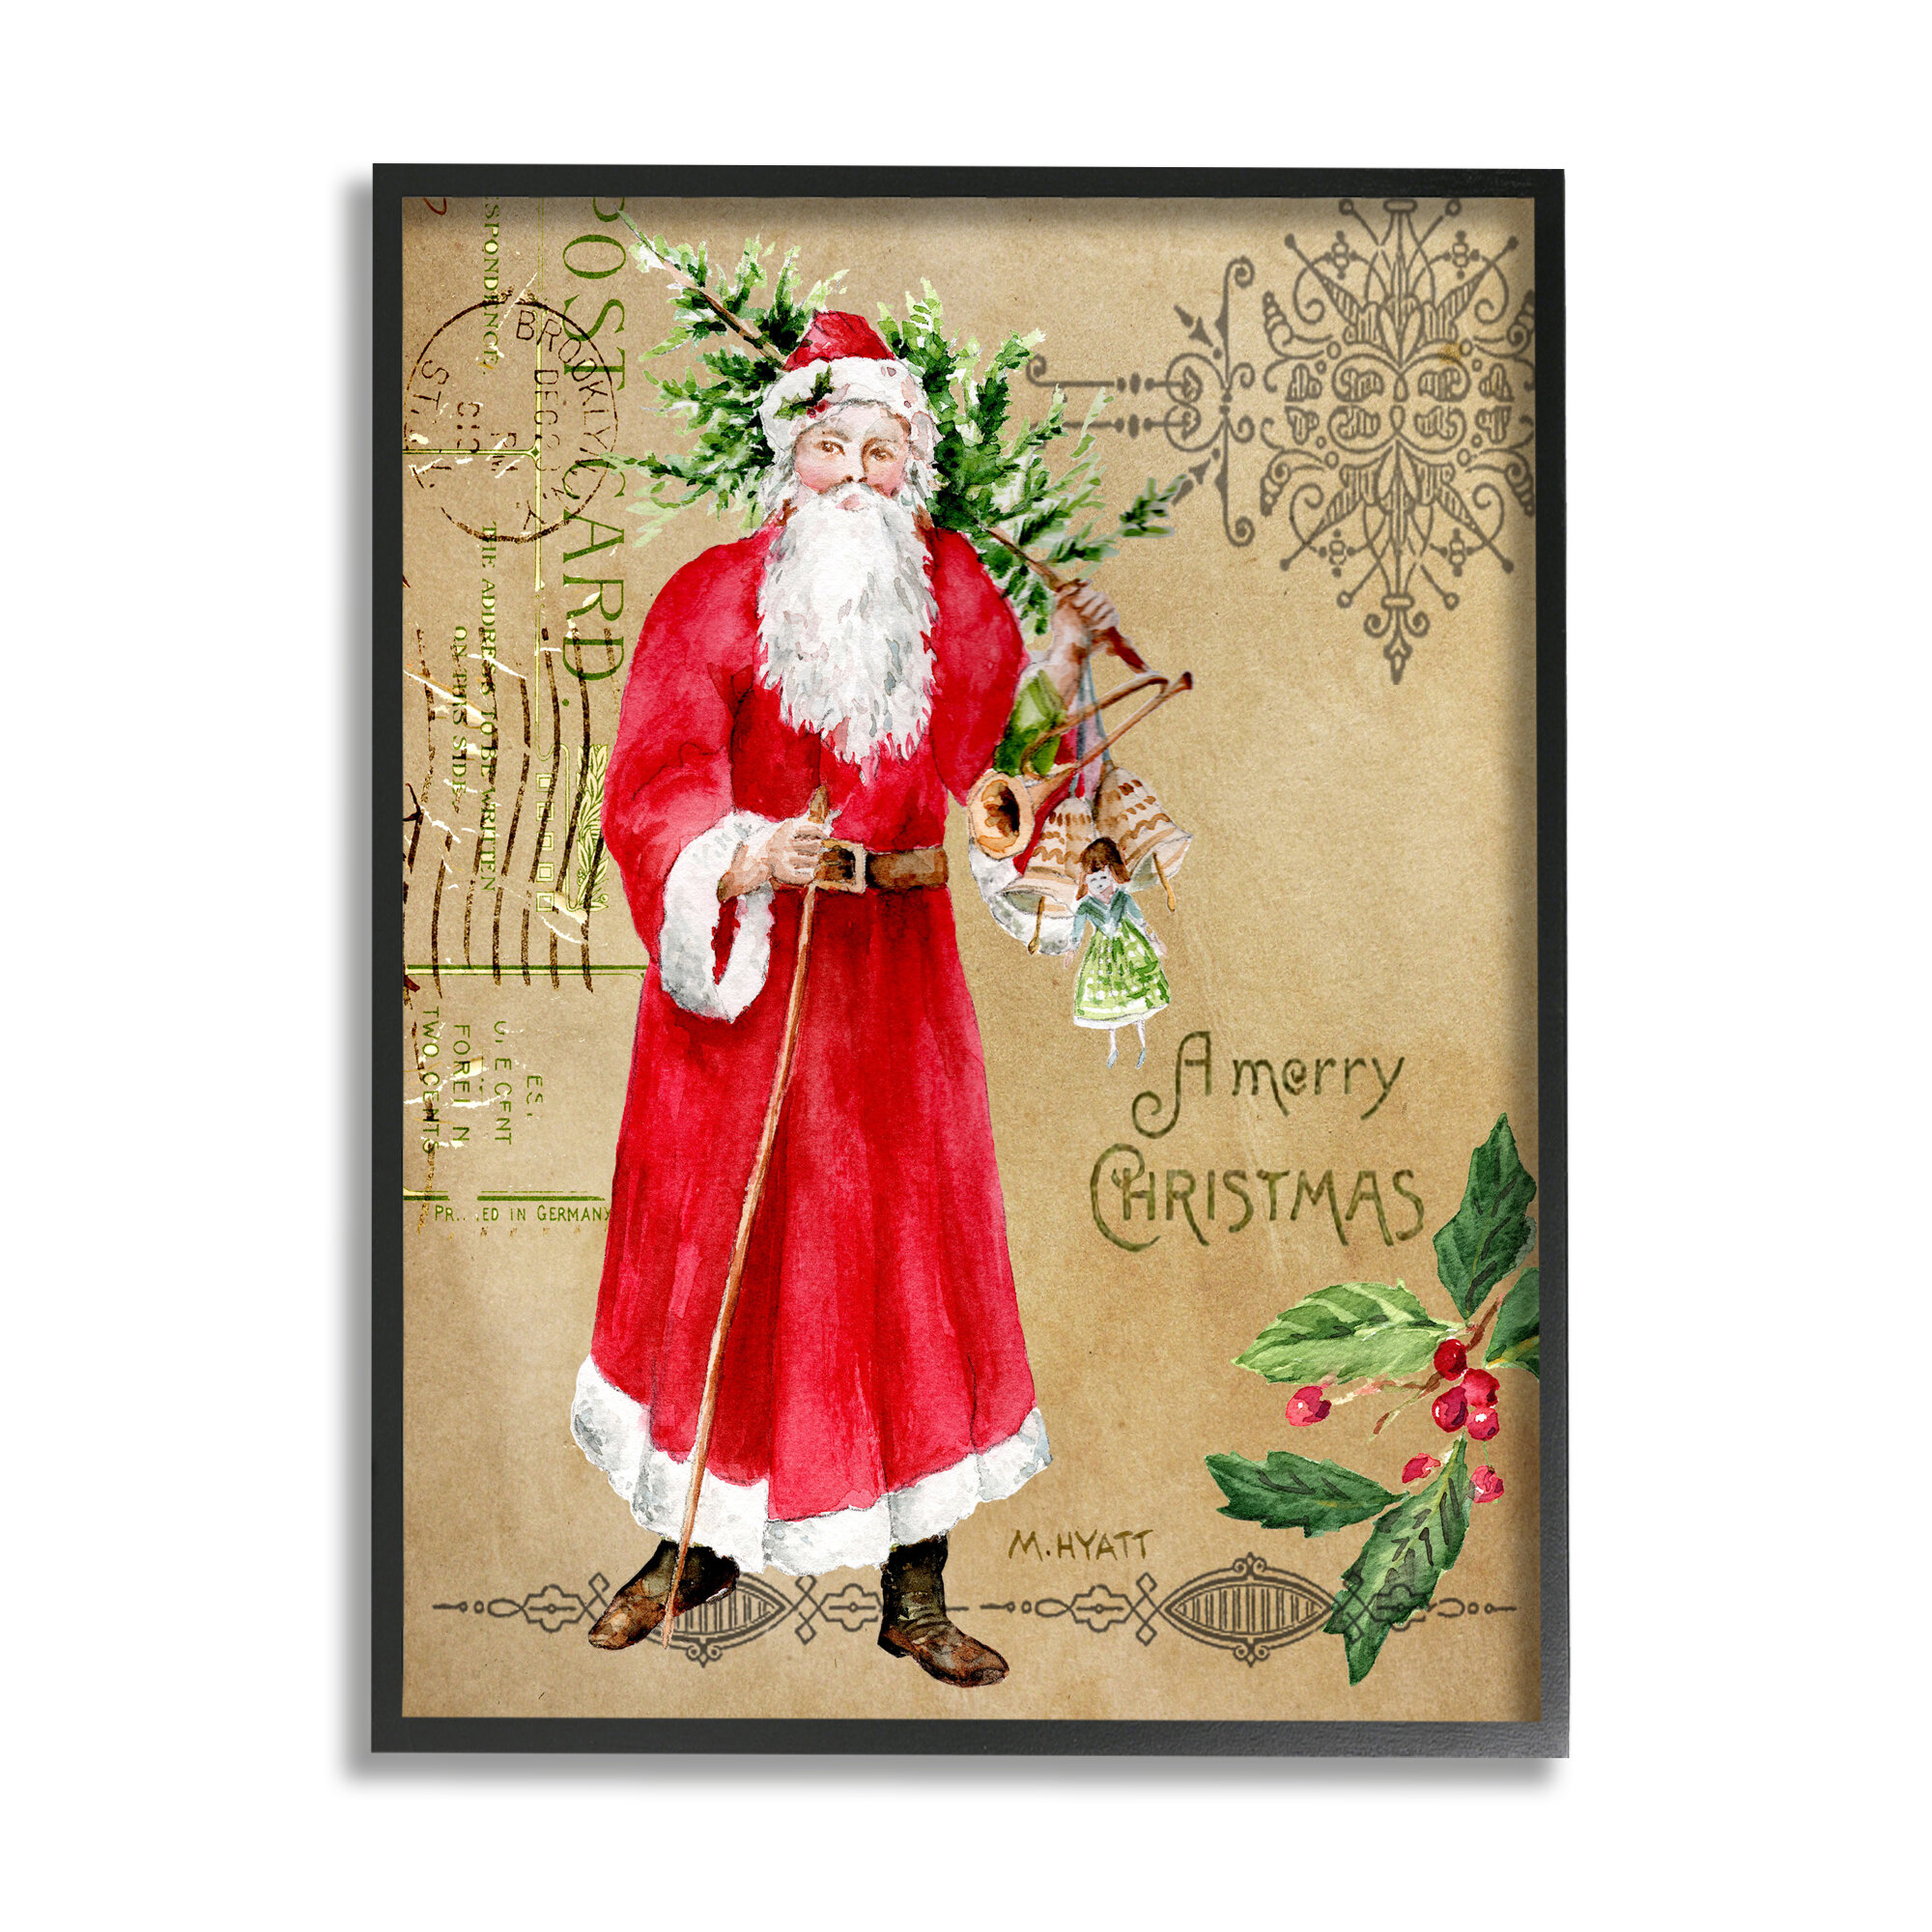 Set of 16 LARGE Victorian/Vintage Santa labels postcard images---Set # 2 